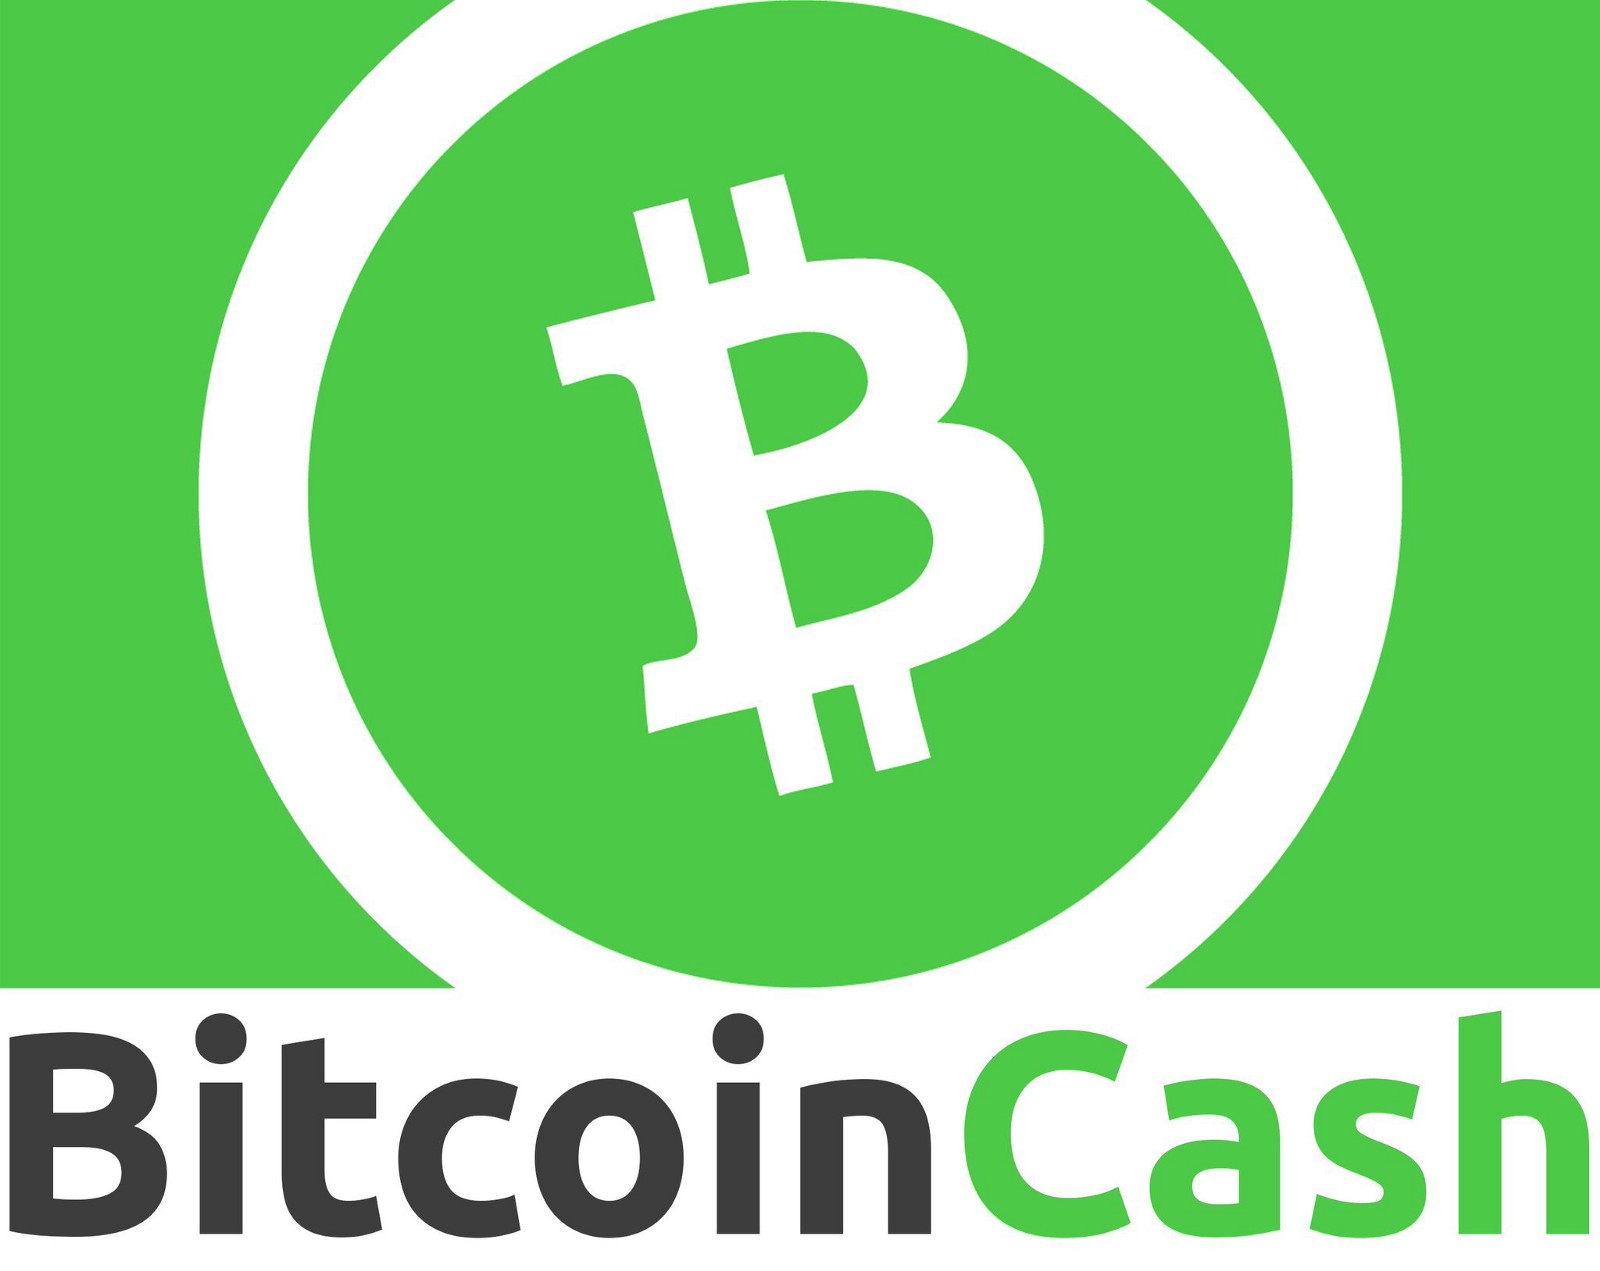 bitcoin cash